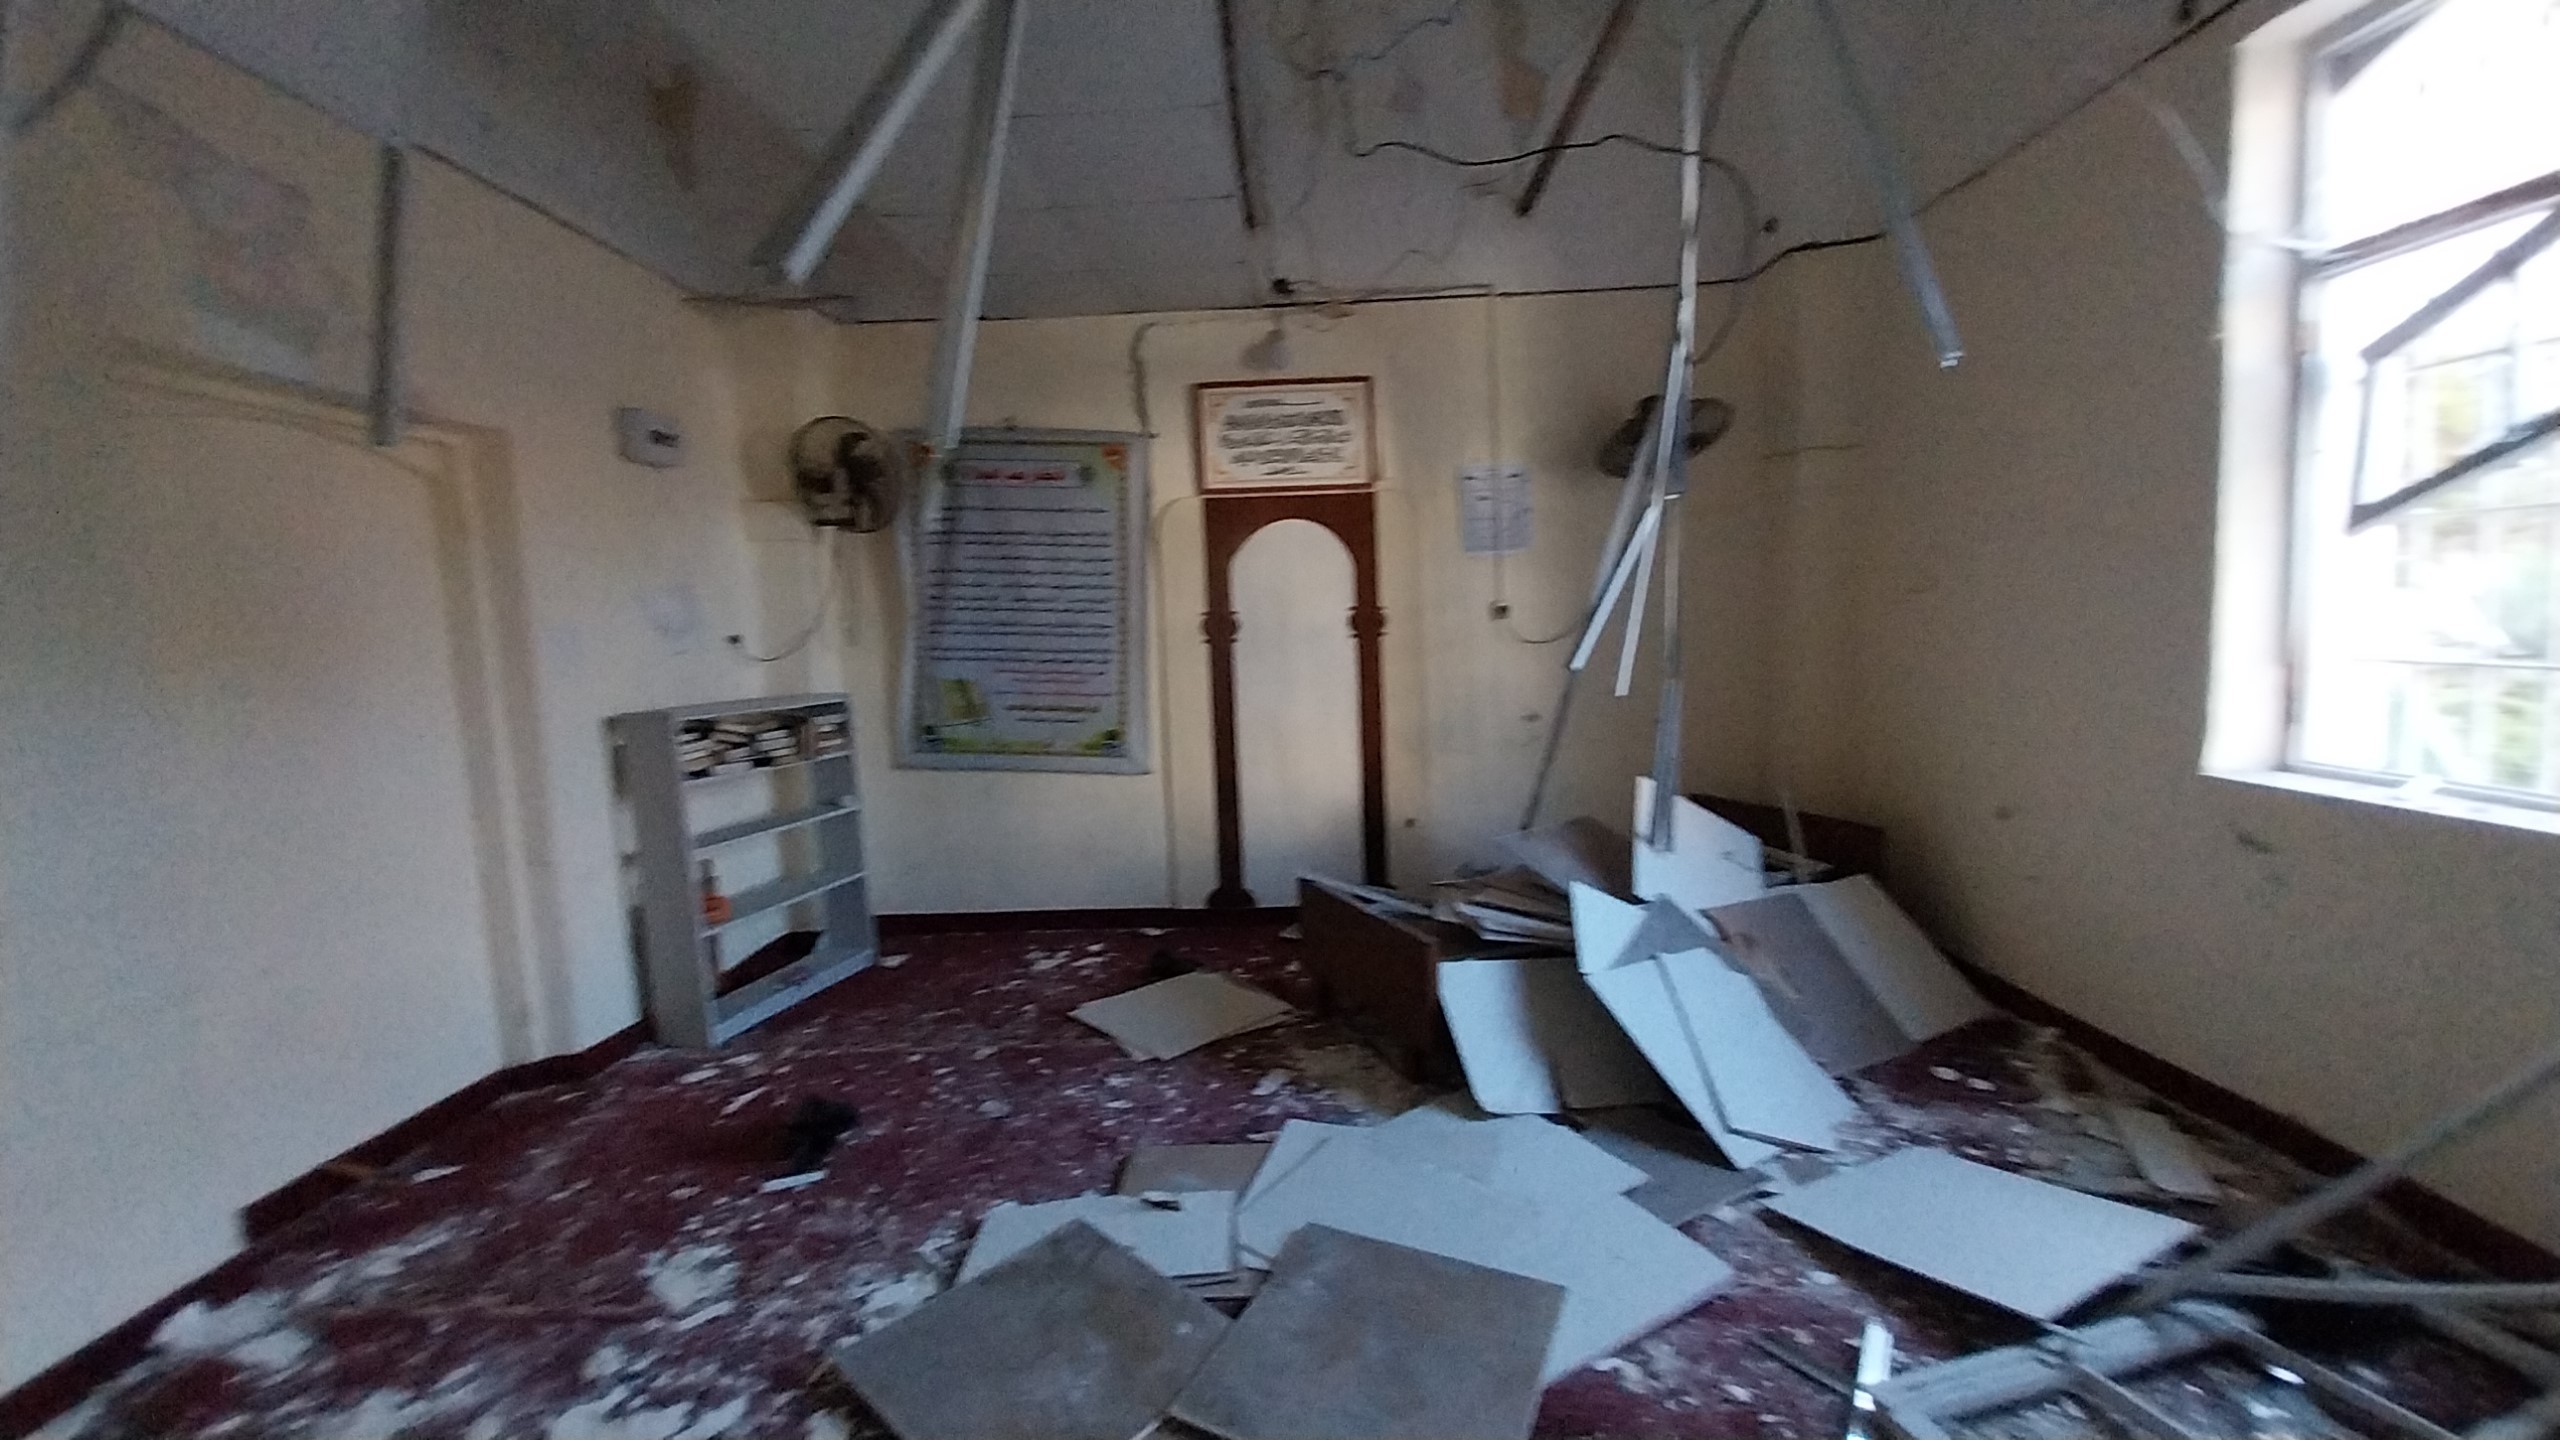 İsrail’in Gazze şehrinin merkezinde bulunan Al Ahli Arab (Baptist) Hastanesi’ne dün akşam gerçekleştirdiği saldırı sonucu en az 500 sivil hayatını kaybetti.